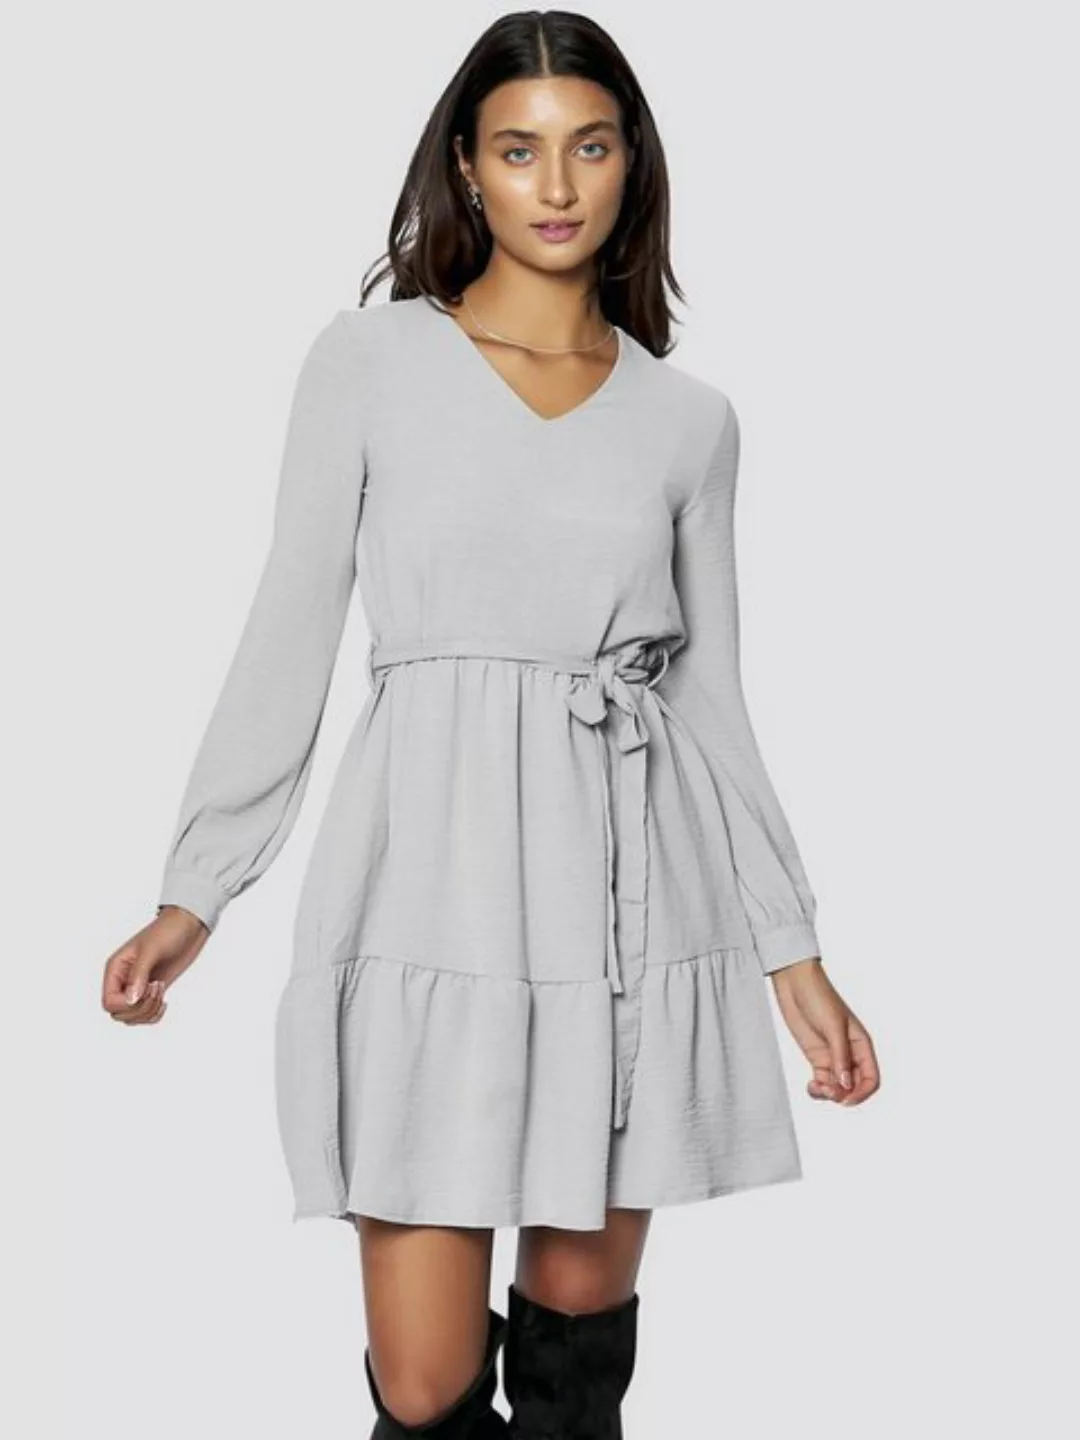 Freshlions Blusenkleid Kleid mit V-Ausschnitt in silbergrau - S günstig online kaufen